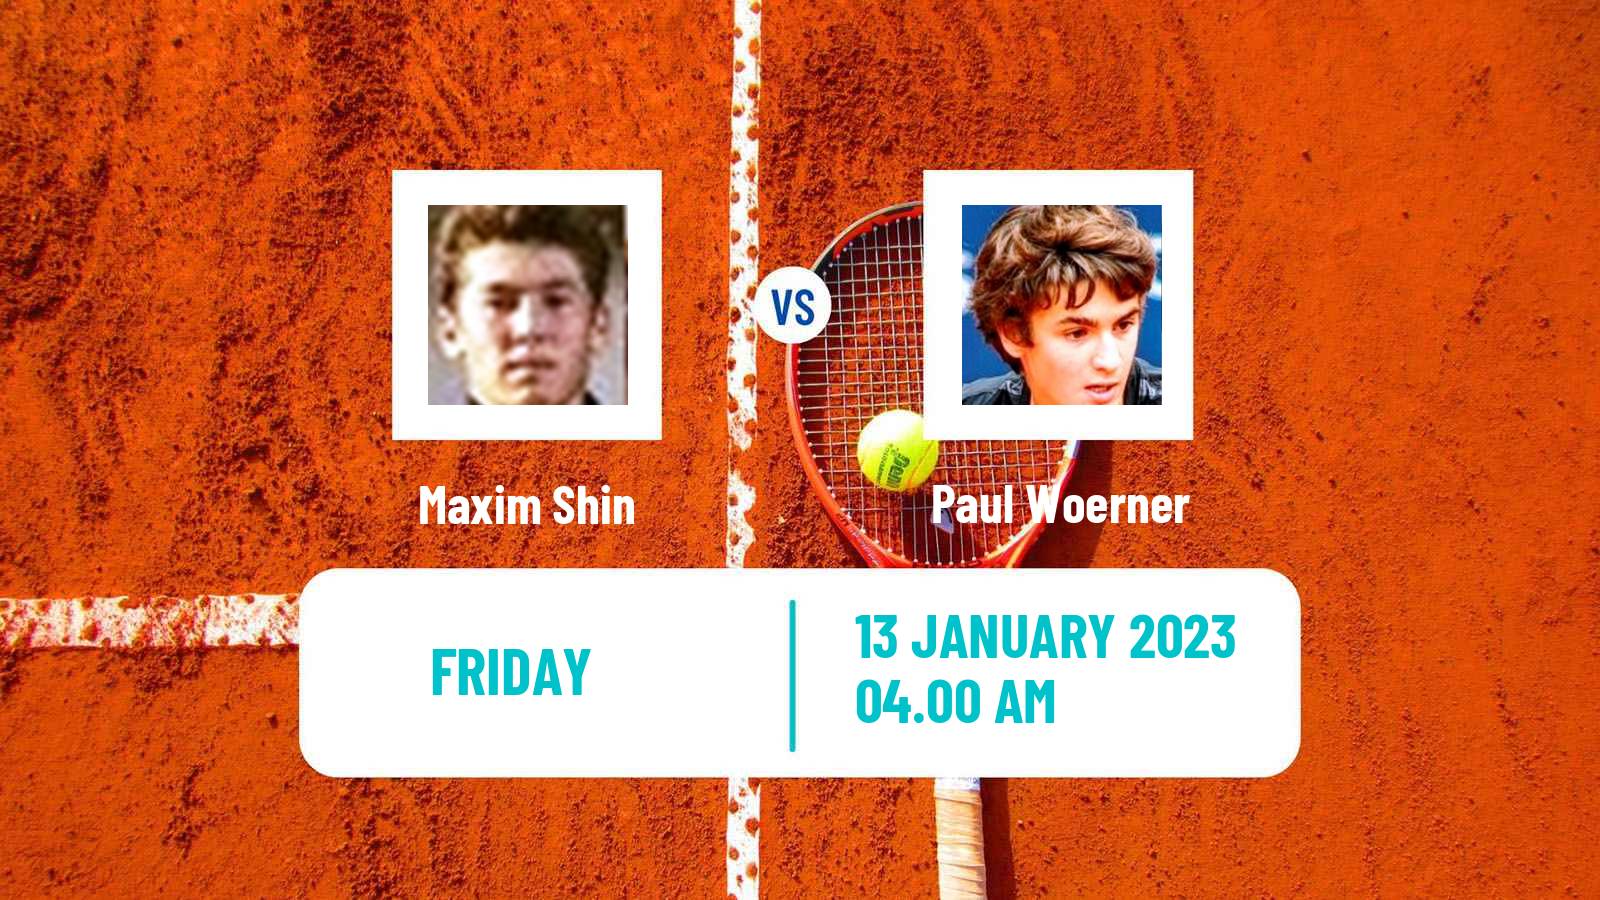 Tennis ITF Tournaments Maxim Shin - Paul Woerner